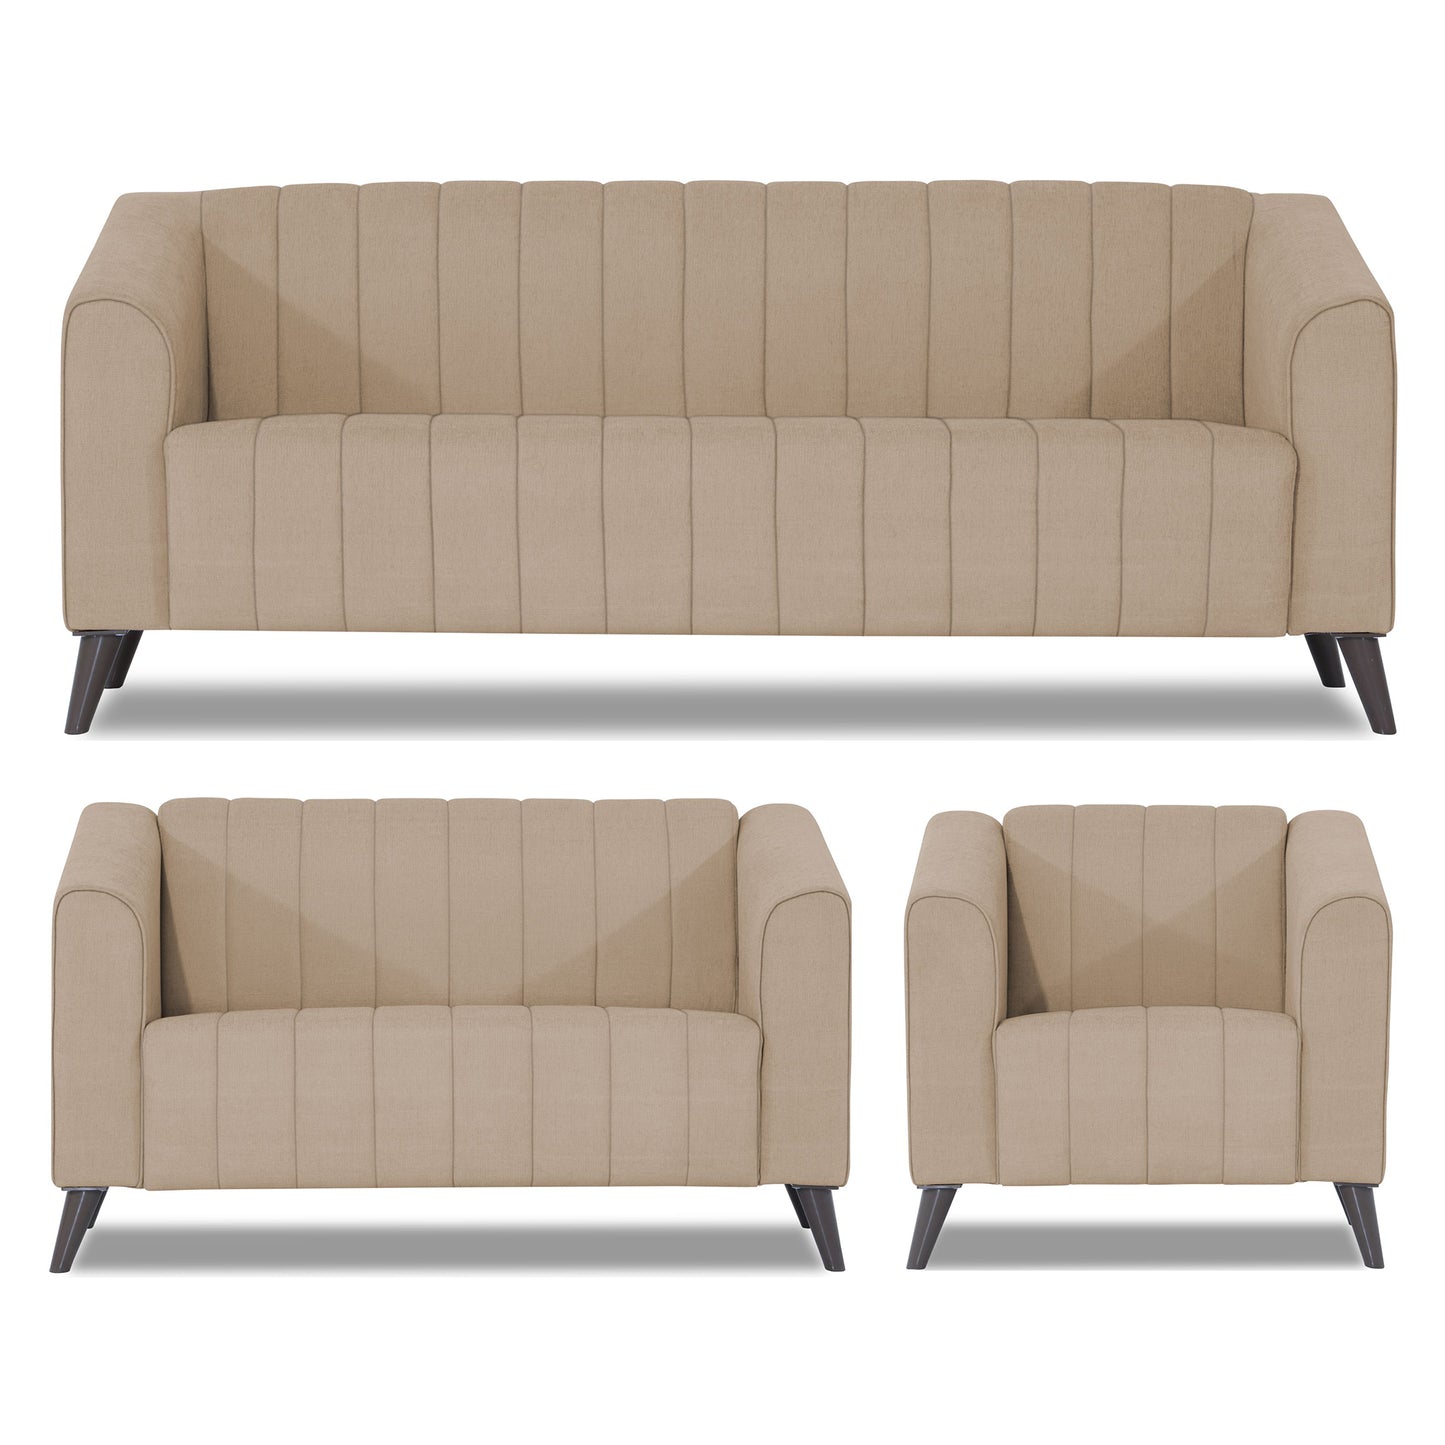 Adorn India Premium Laurel 3+2+1 6 Seater Sofa Set (Beige)